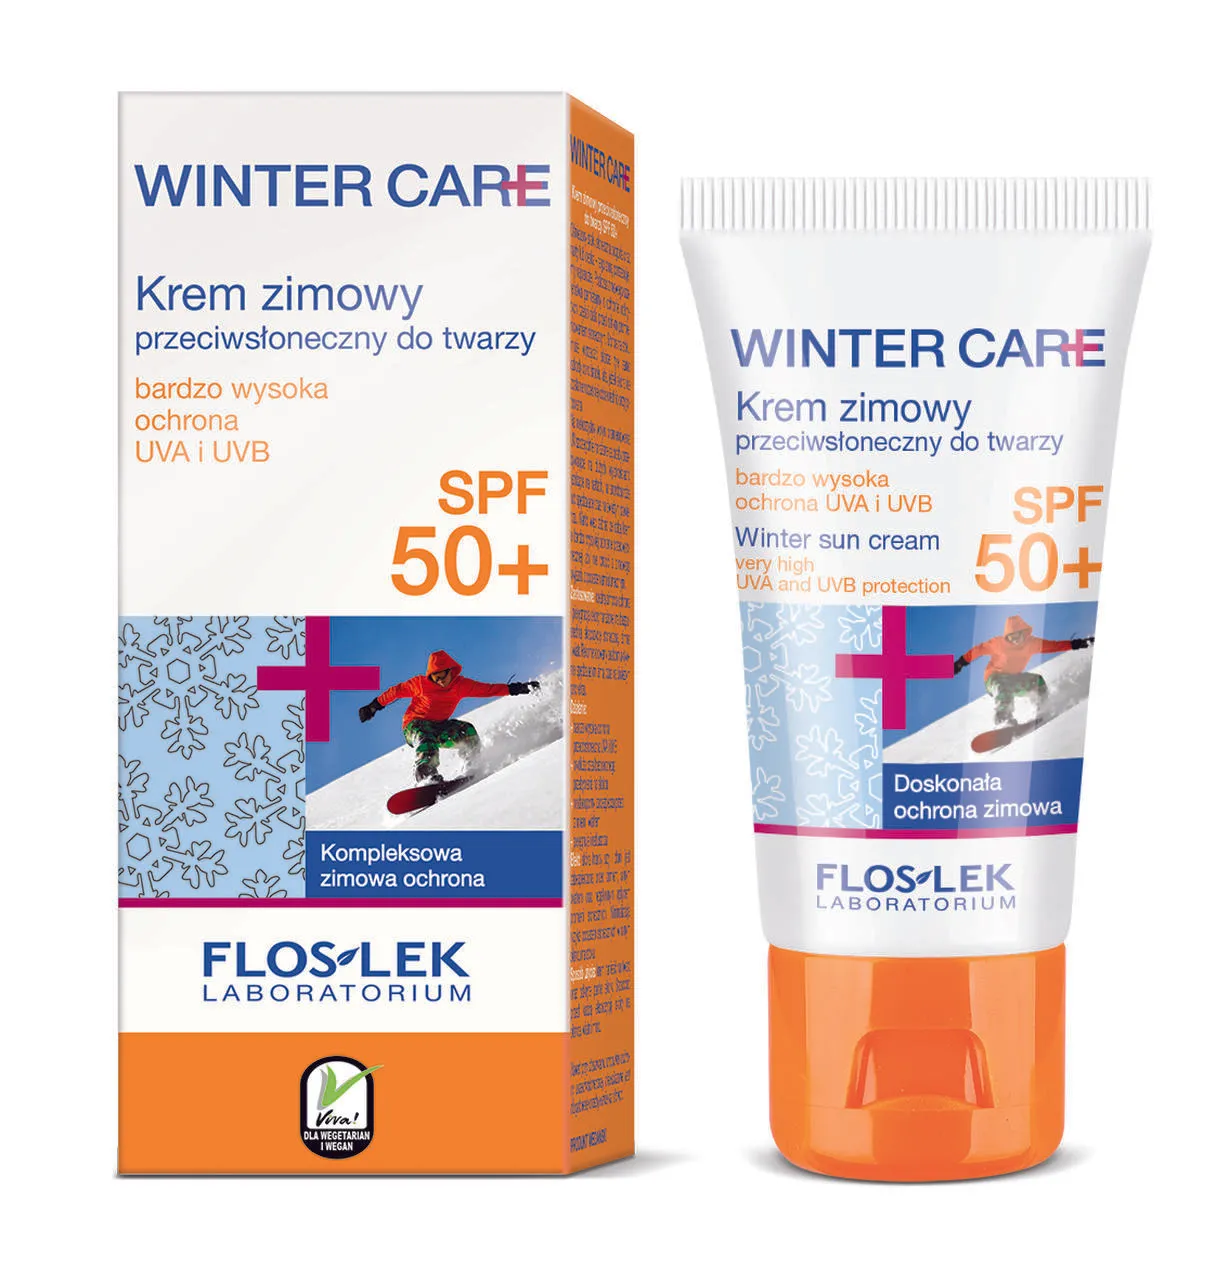 Floslek Laboratorium Winter Care, krem zimowy, przeciwsłoneczny do twarzy, SPF 50+, 30 ml